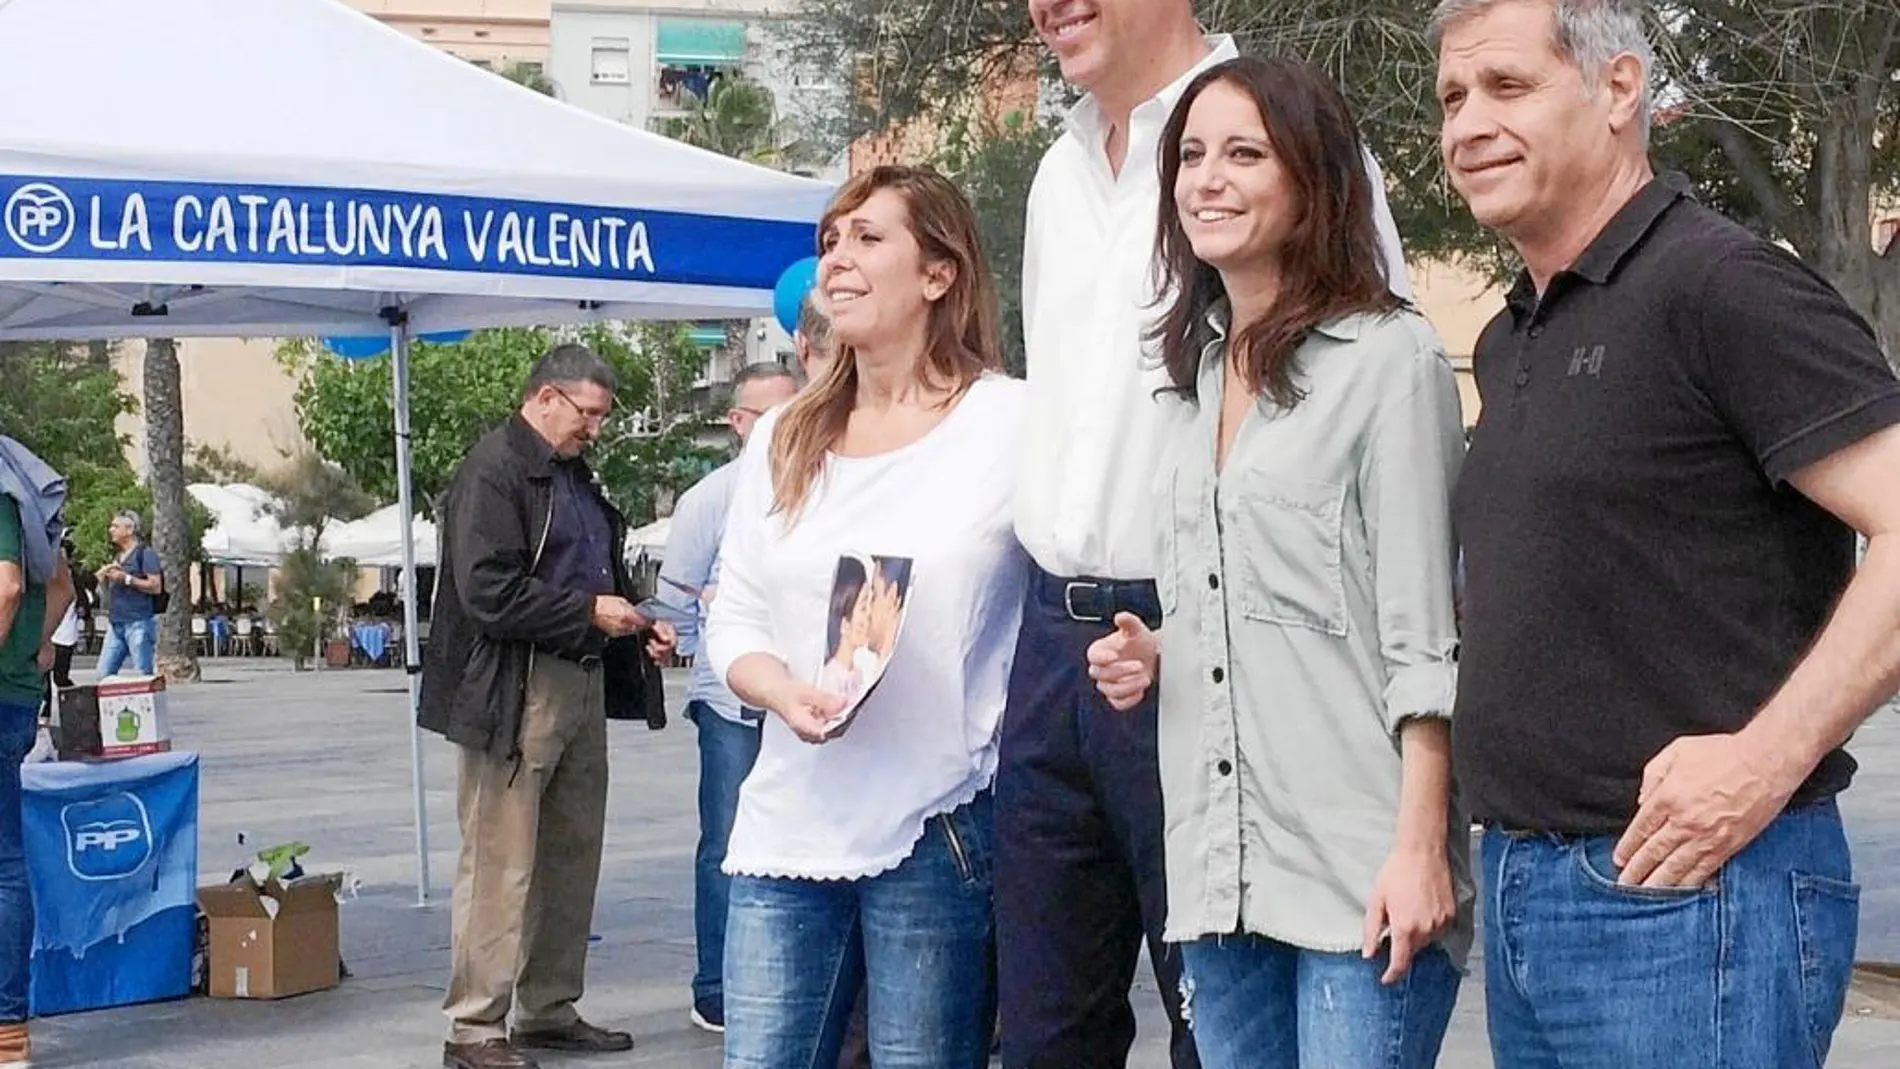 El líder del PP catalán, Xavier García Albiol, acompañado de Alberto Fernández, Andrea Levy y Alicia Sánchez-Camacho, encabezó ayer en el barrio de la Barceloneta la campaña «La Cataluña valiente»